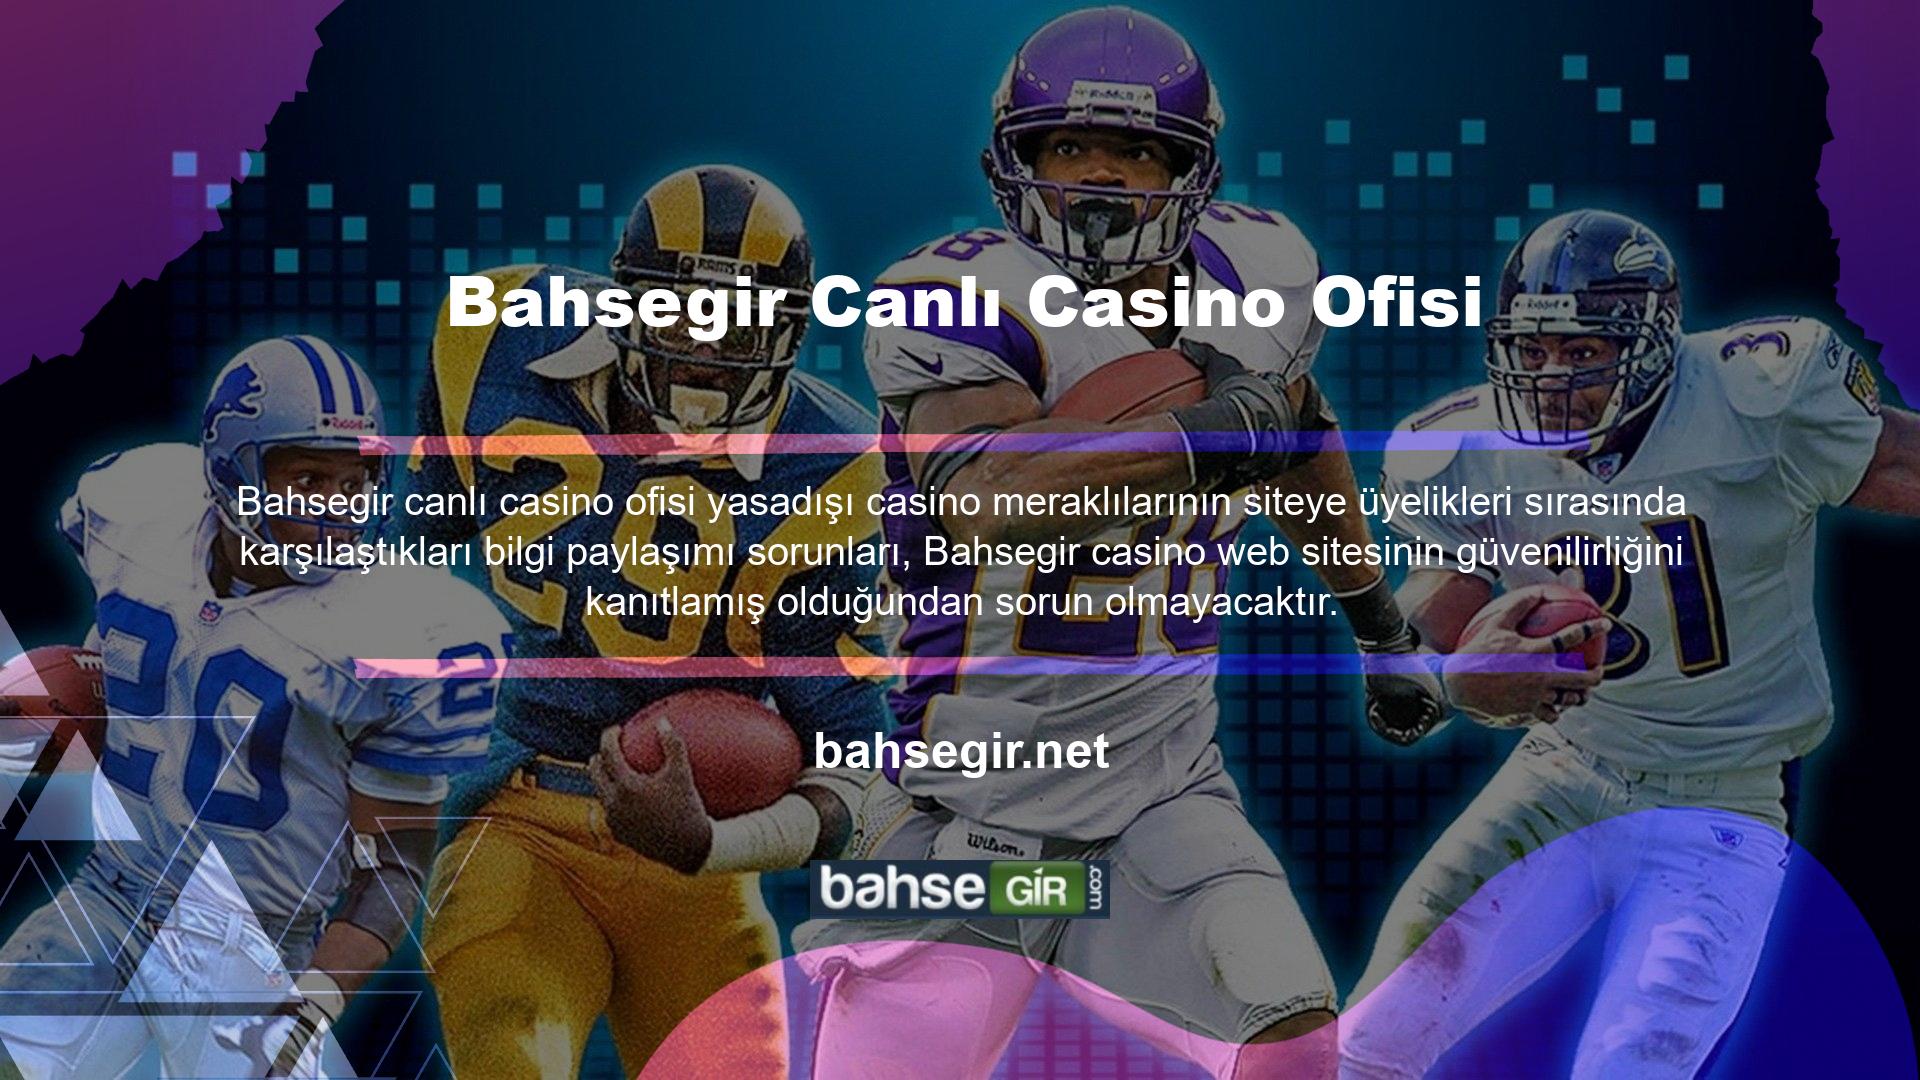 Canlı bahis ve casino oyun sektörü söz konusu olduğunda Bahsegir, her bahis tutkununun aklına gelen bonus hizmetini bahis tutkunlarına sunmaktadır